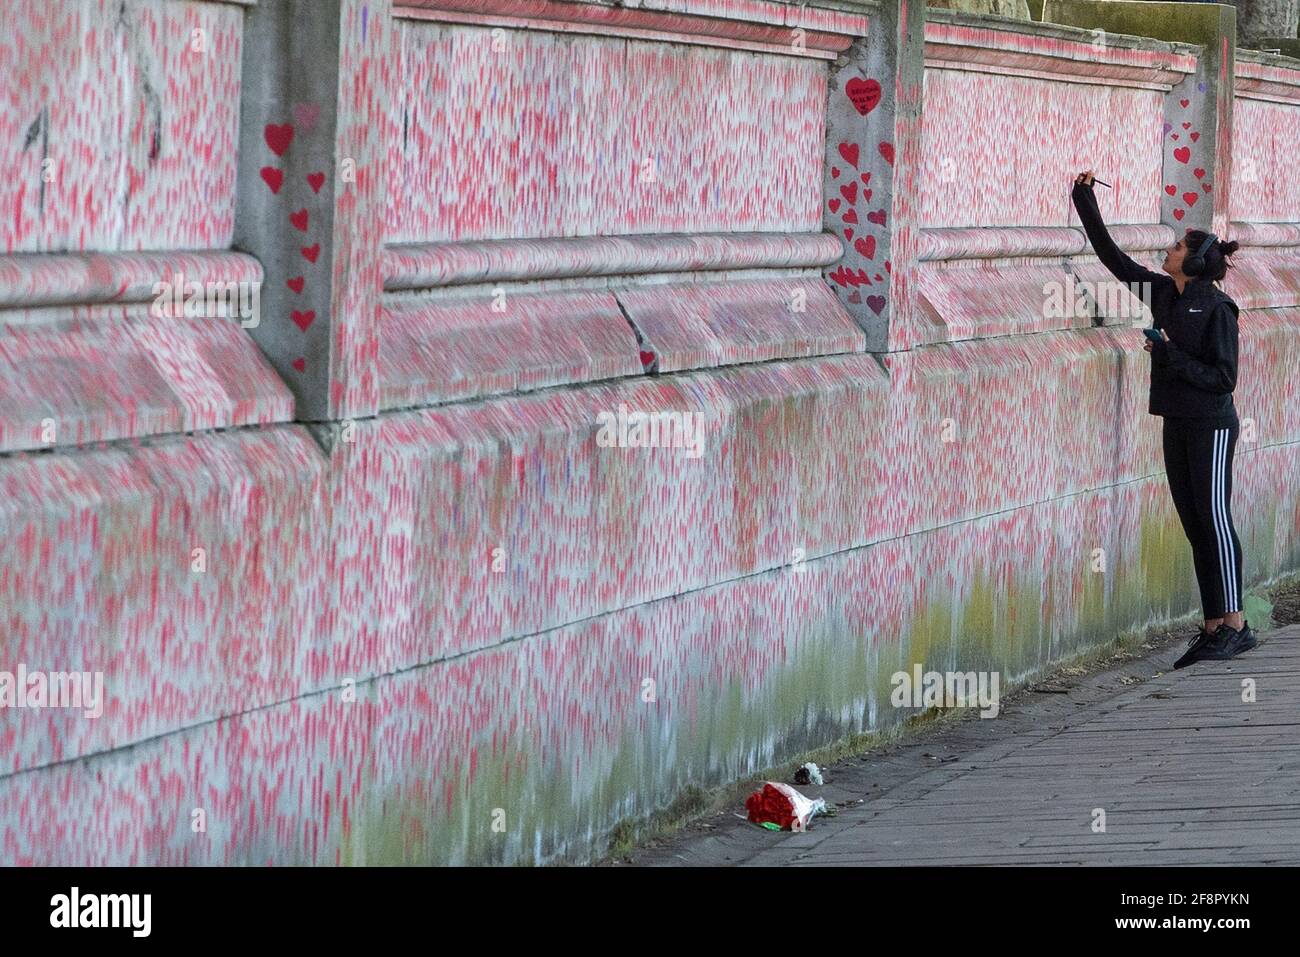 La gente cammina oltre e scrive sul muro commemorativo nazionale del Covid, a Londra il 9 aprile 2021 Foto Stock